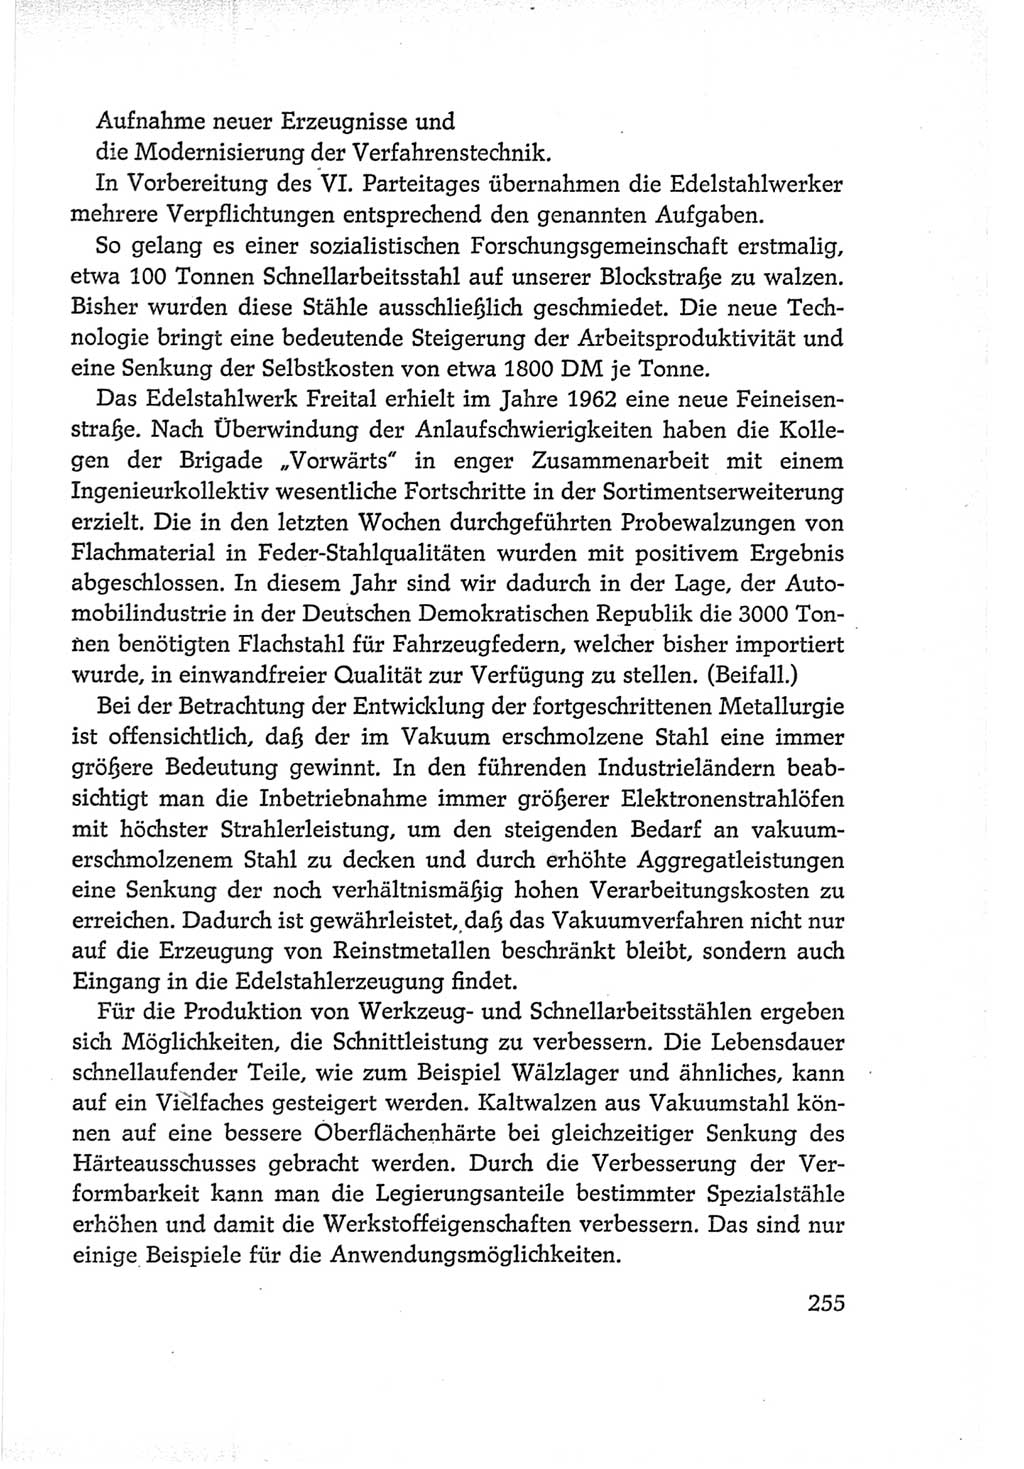 Protokoll der Verhandlungen des Ⅵ. Parteitages der Sozialistischen Einheitspartei Deutschlands (SED) [Deutsche Demokratische Republik (DDR)] 1963, Band Ⅰ, Seite 255 (Prot. Verh. Ⅵ. PT SED DDR 1963, Bd. Ⅰ, S. 255)